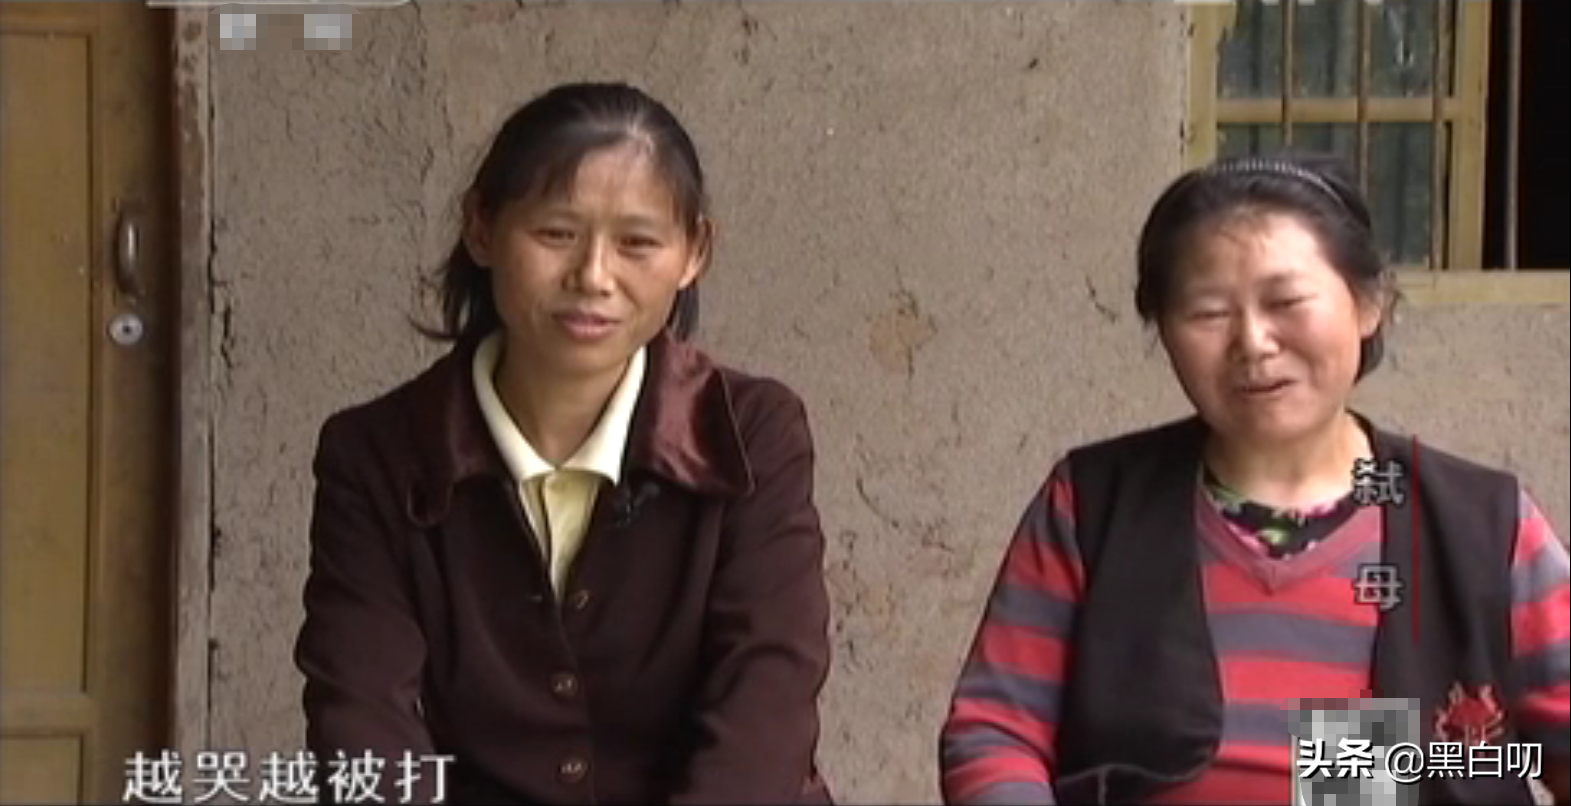 2011年，四川男子帮助偏瘫20年母亲喝下农药自杀：是她强迫我的